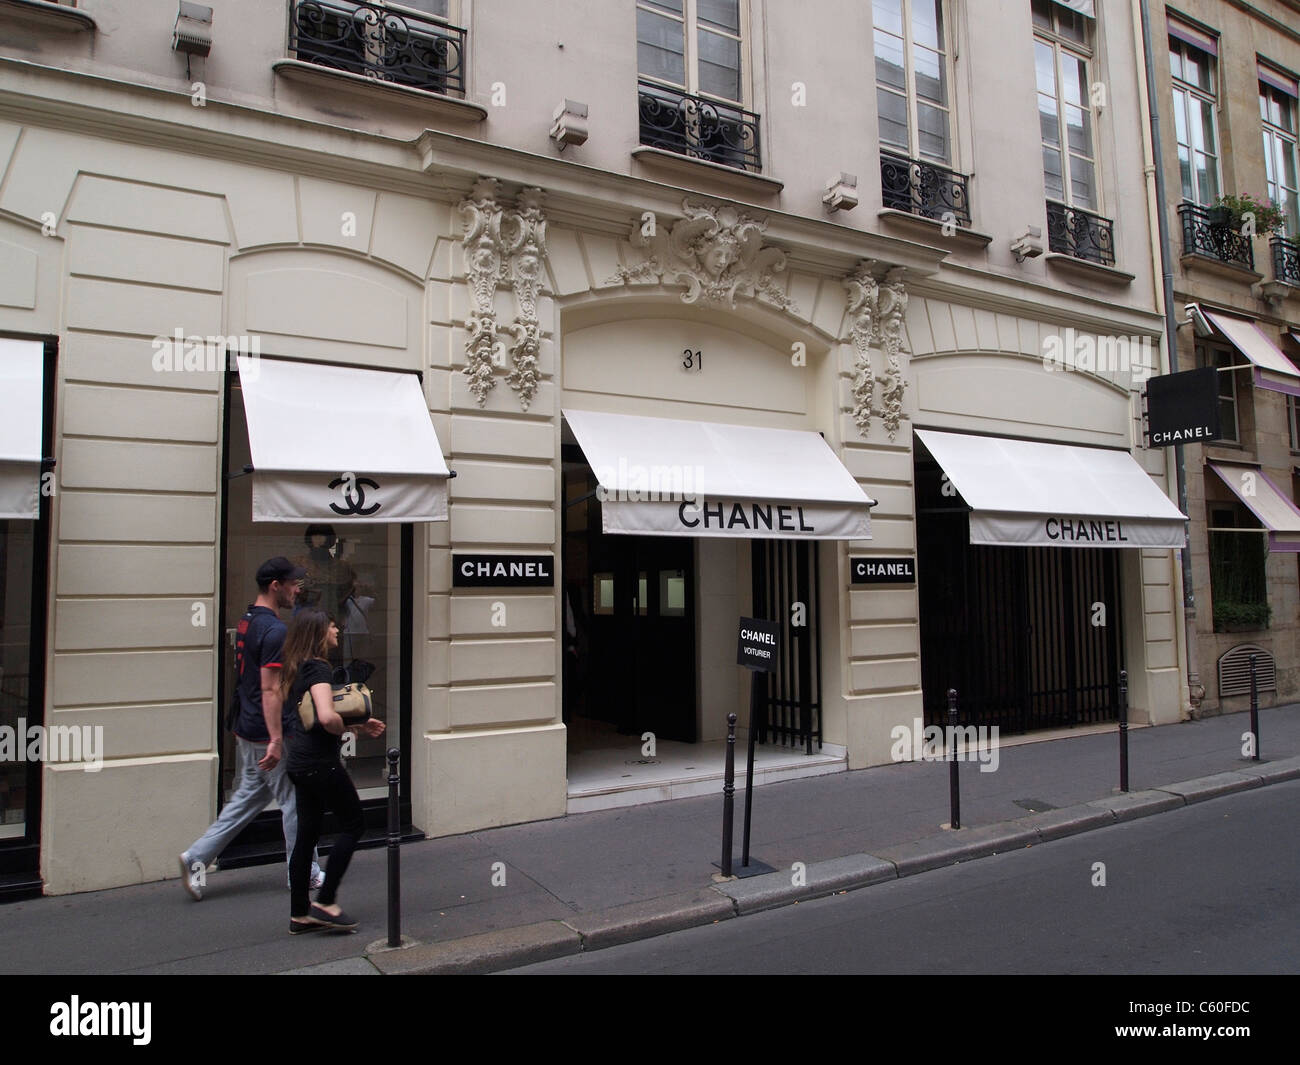 Der berühmte Chanel Shop Rue Cambon 31 in Paris, Frankreich. Dieses  Modegeschäft wurde 1915 von Coco Chanel gegründet Stockfotografie - Alamy